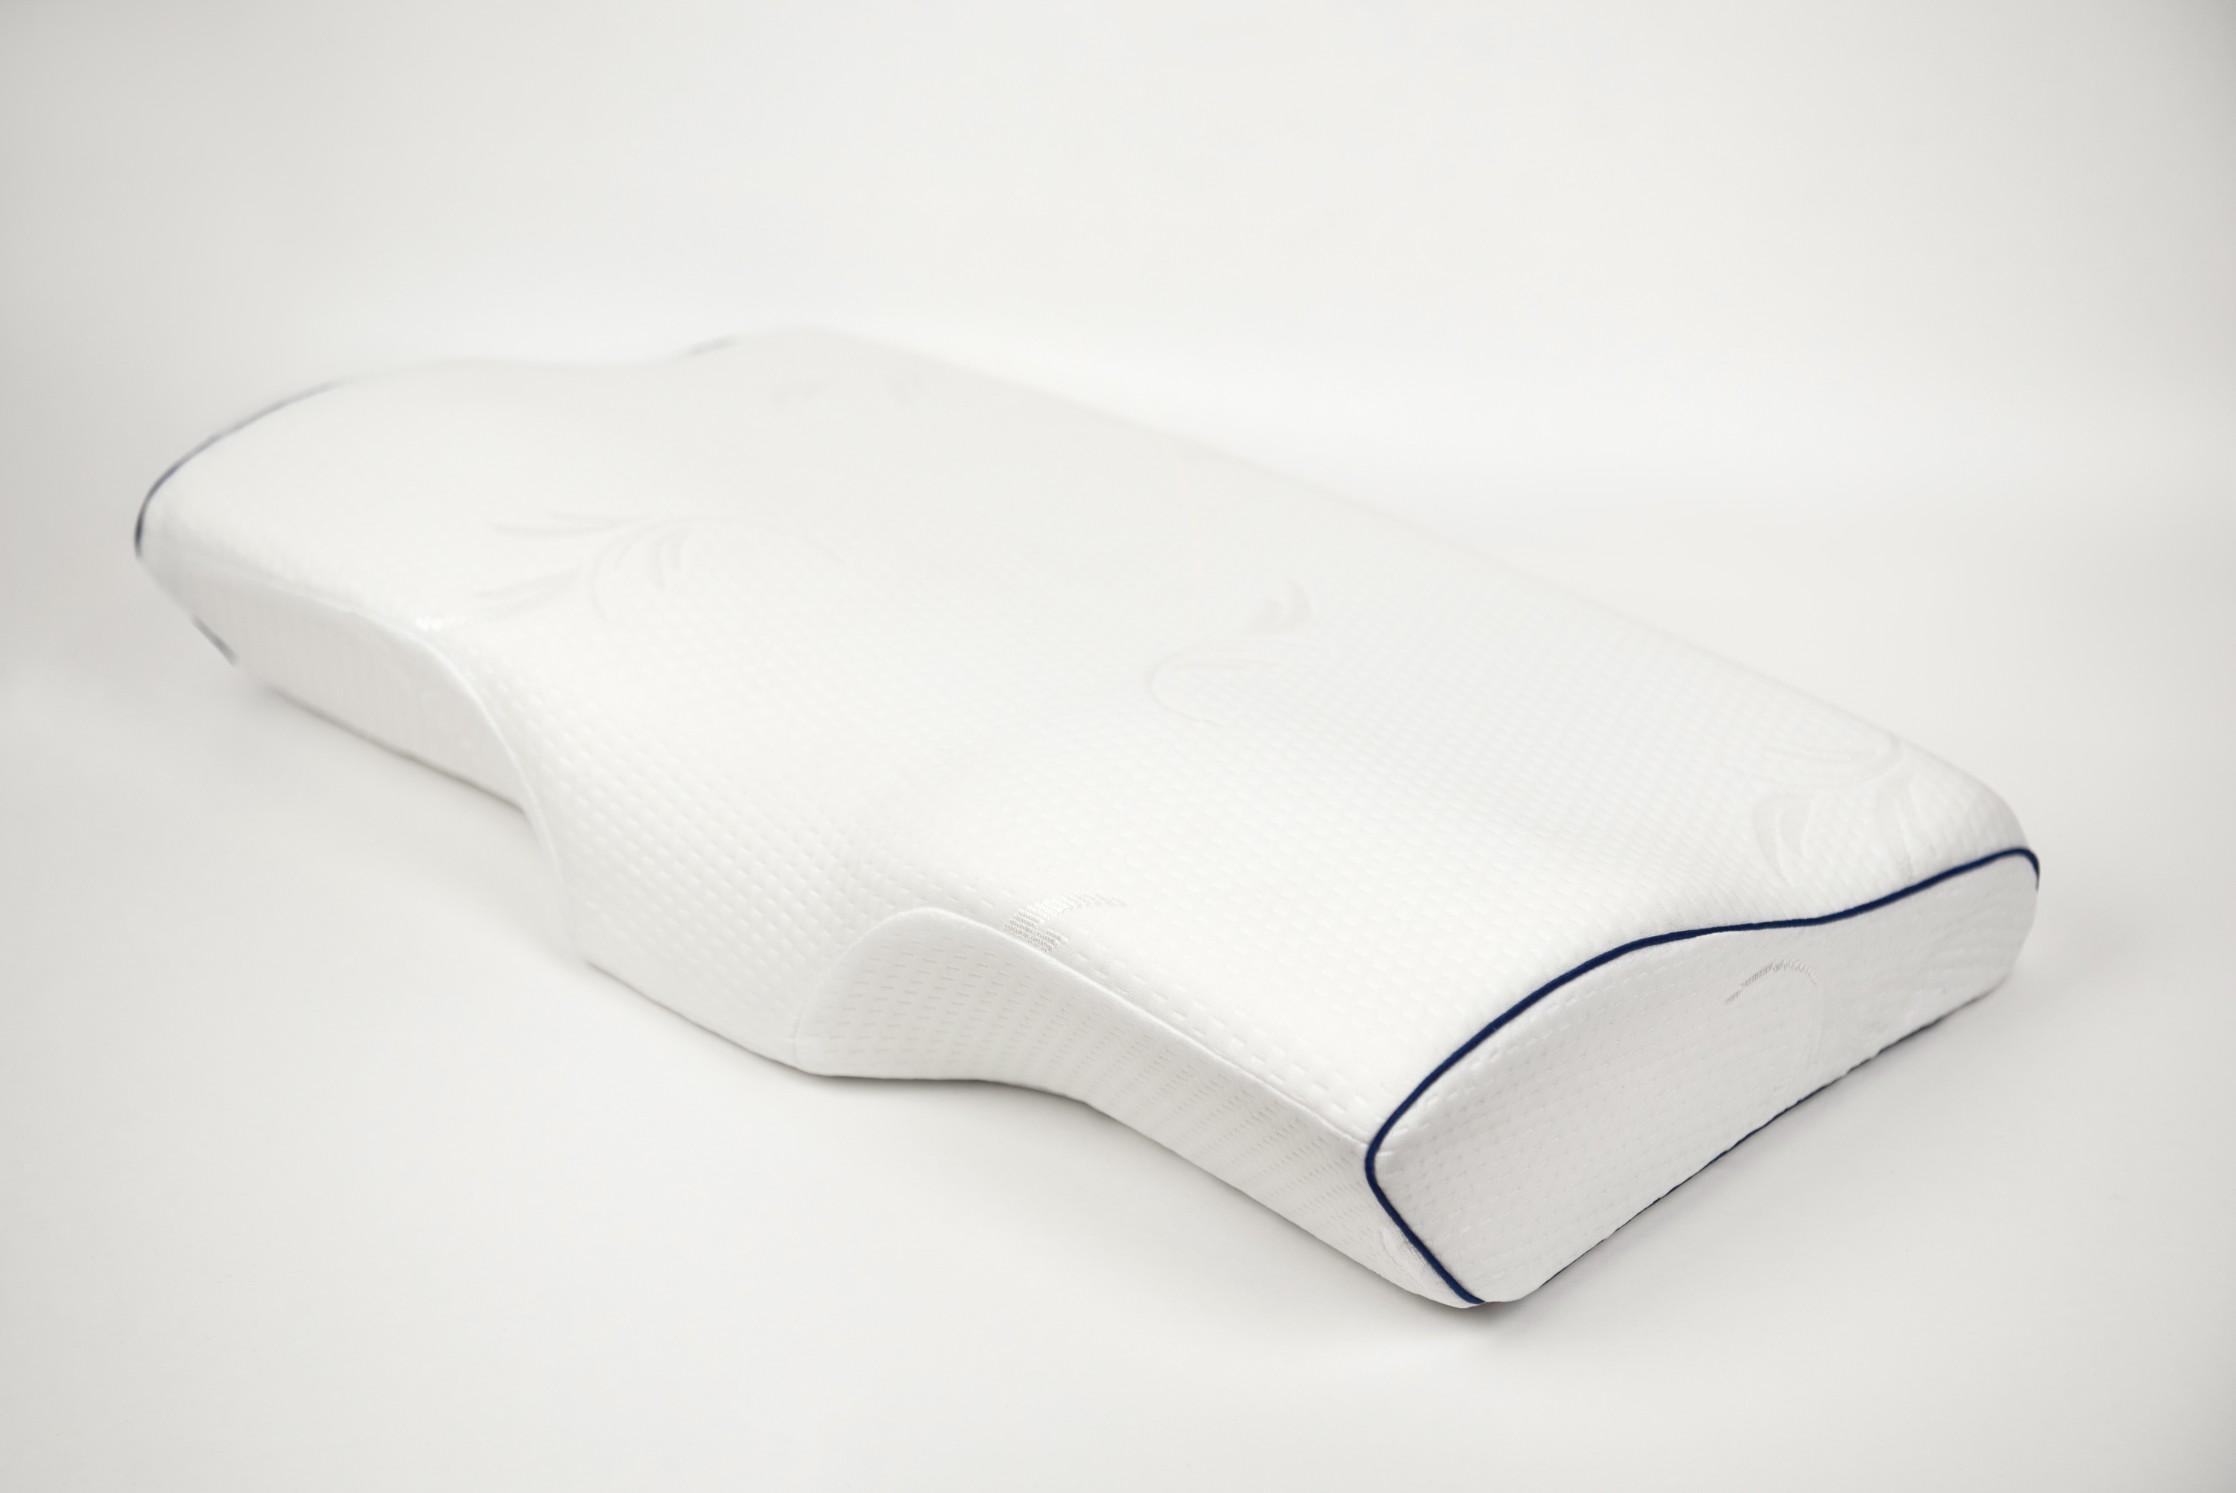 Купить Анатомическая подушка с выемкой под шею от производителя “Архитектория” фото №1